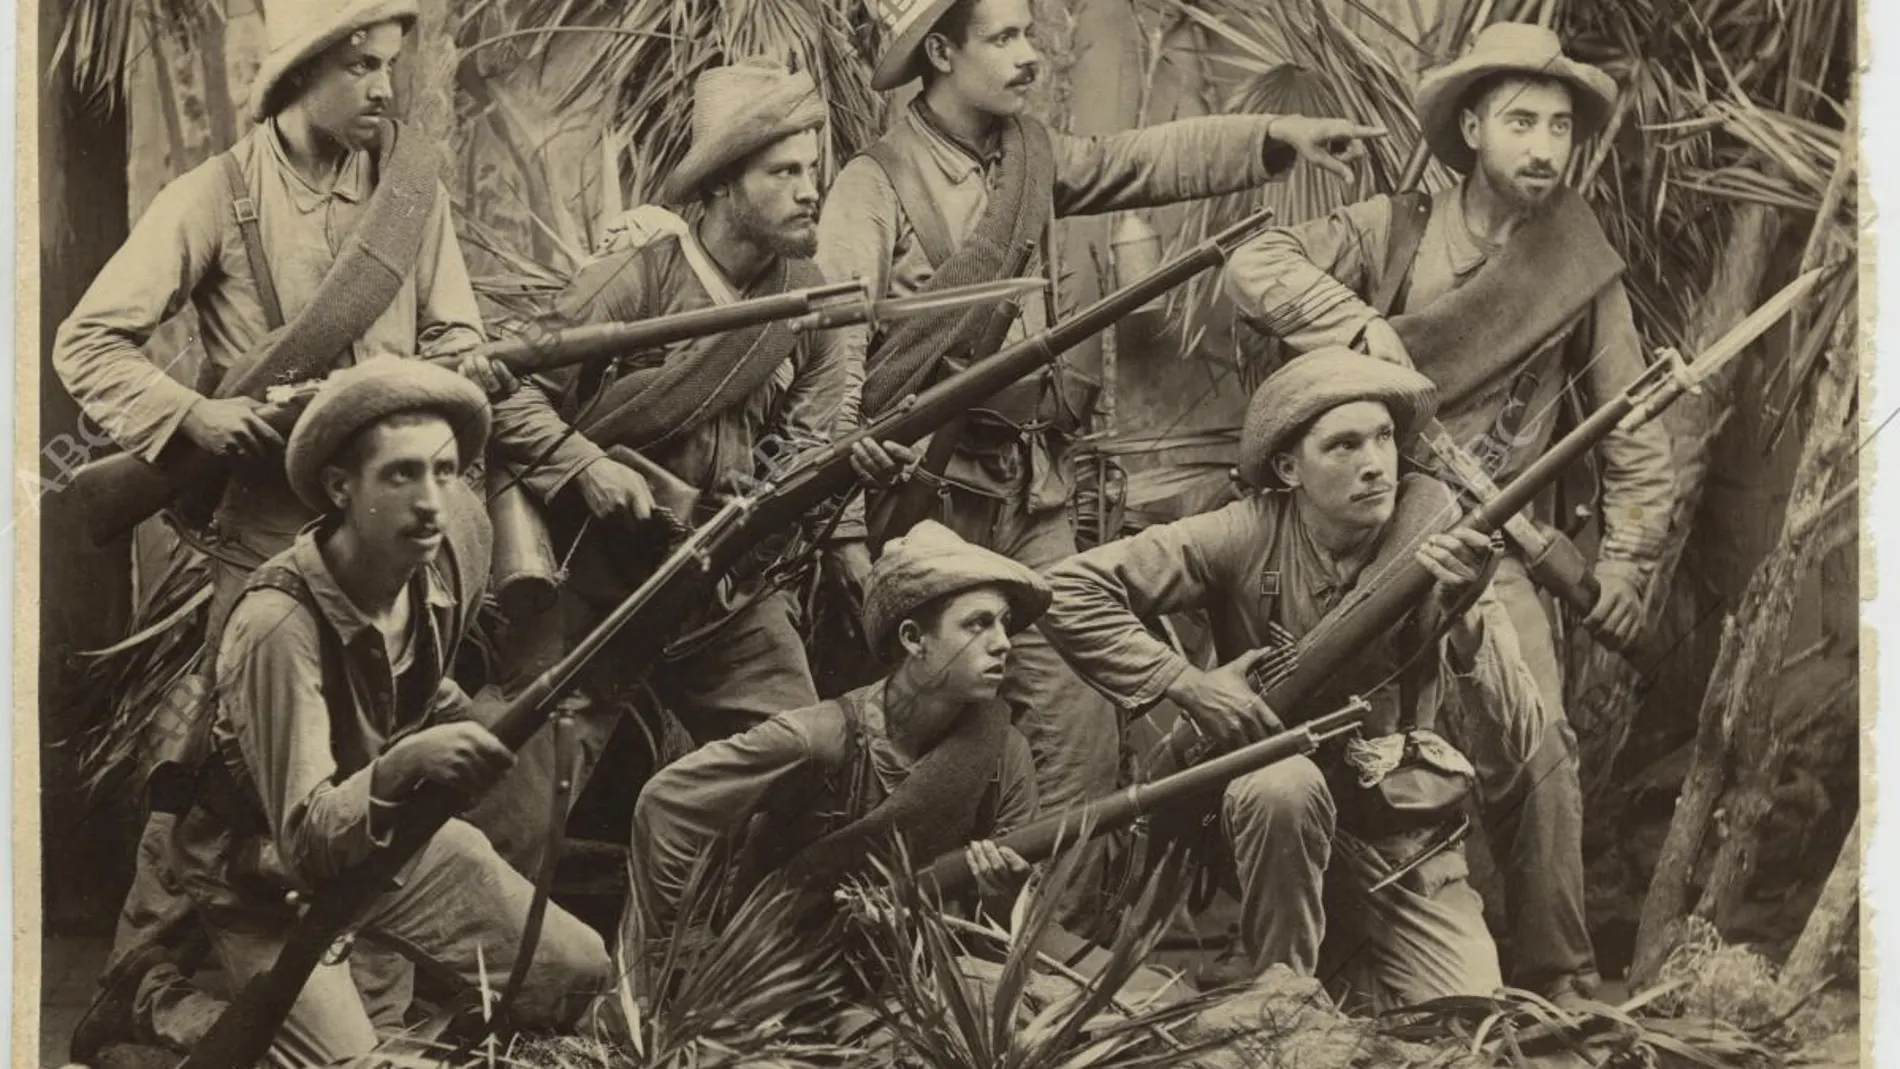 Soldados españoles durante la Guerra de Cuba armados con Maüsers y preparados para una emboscada en diciembre de 18951895 España Guerras Guerra de Cuba 1895 1898Infantería